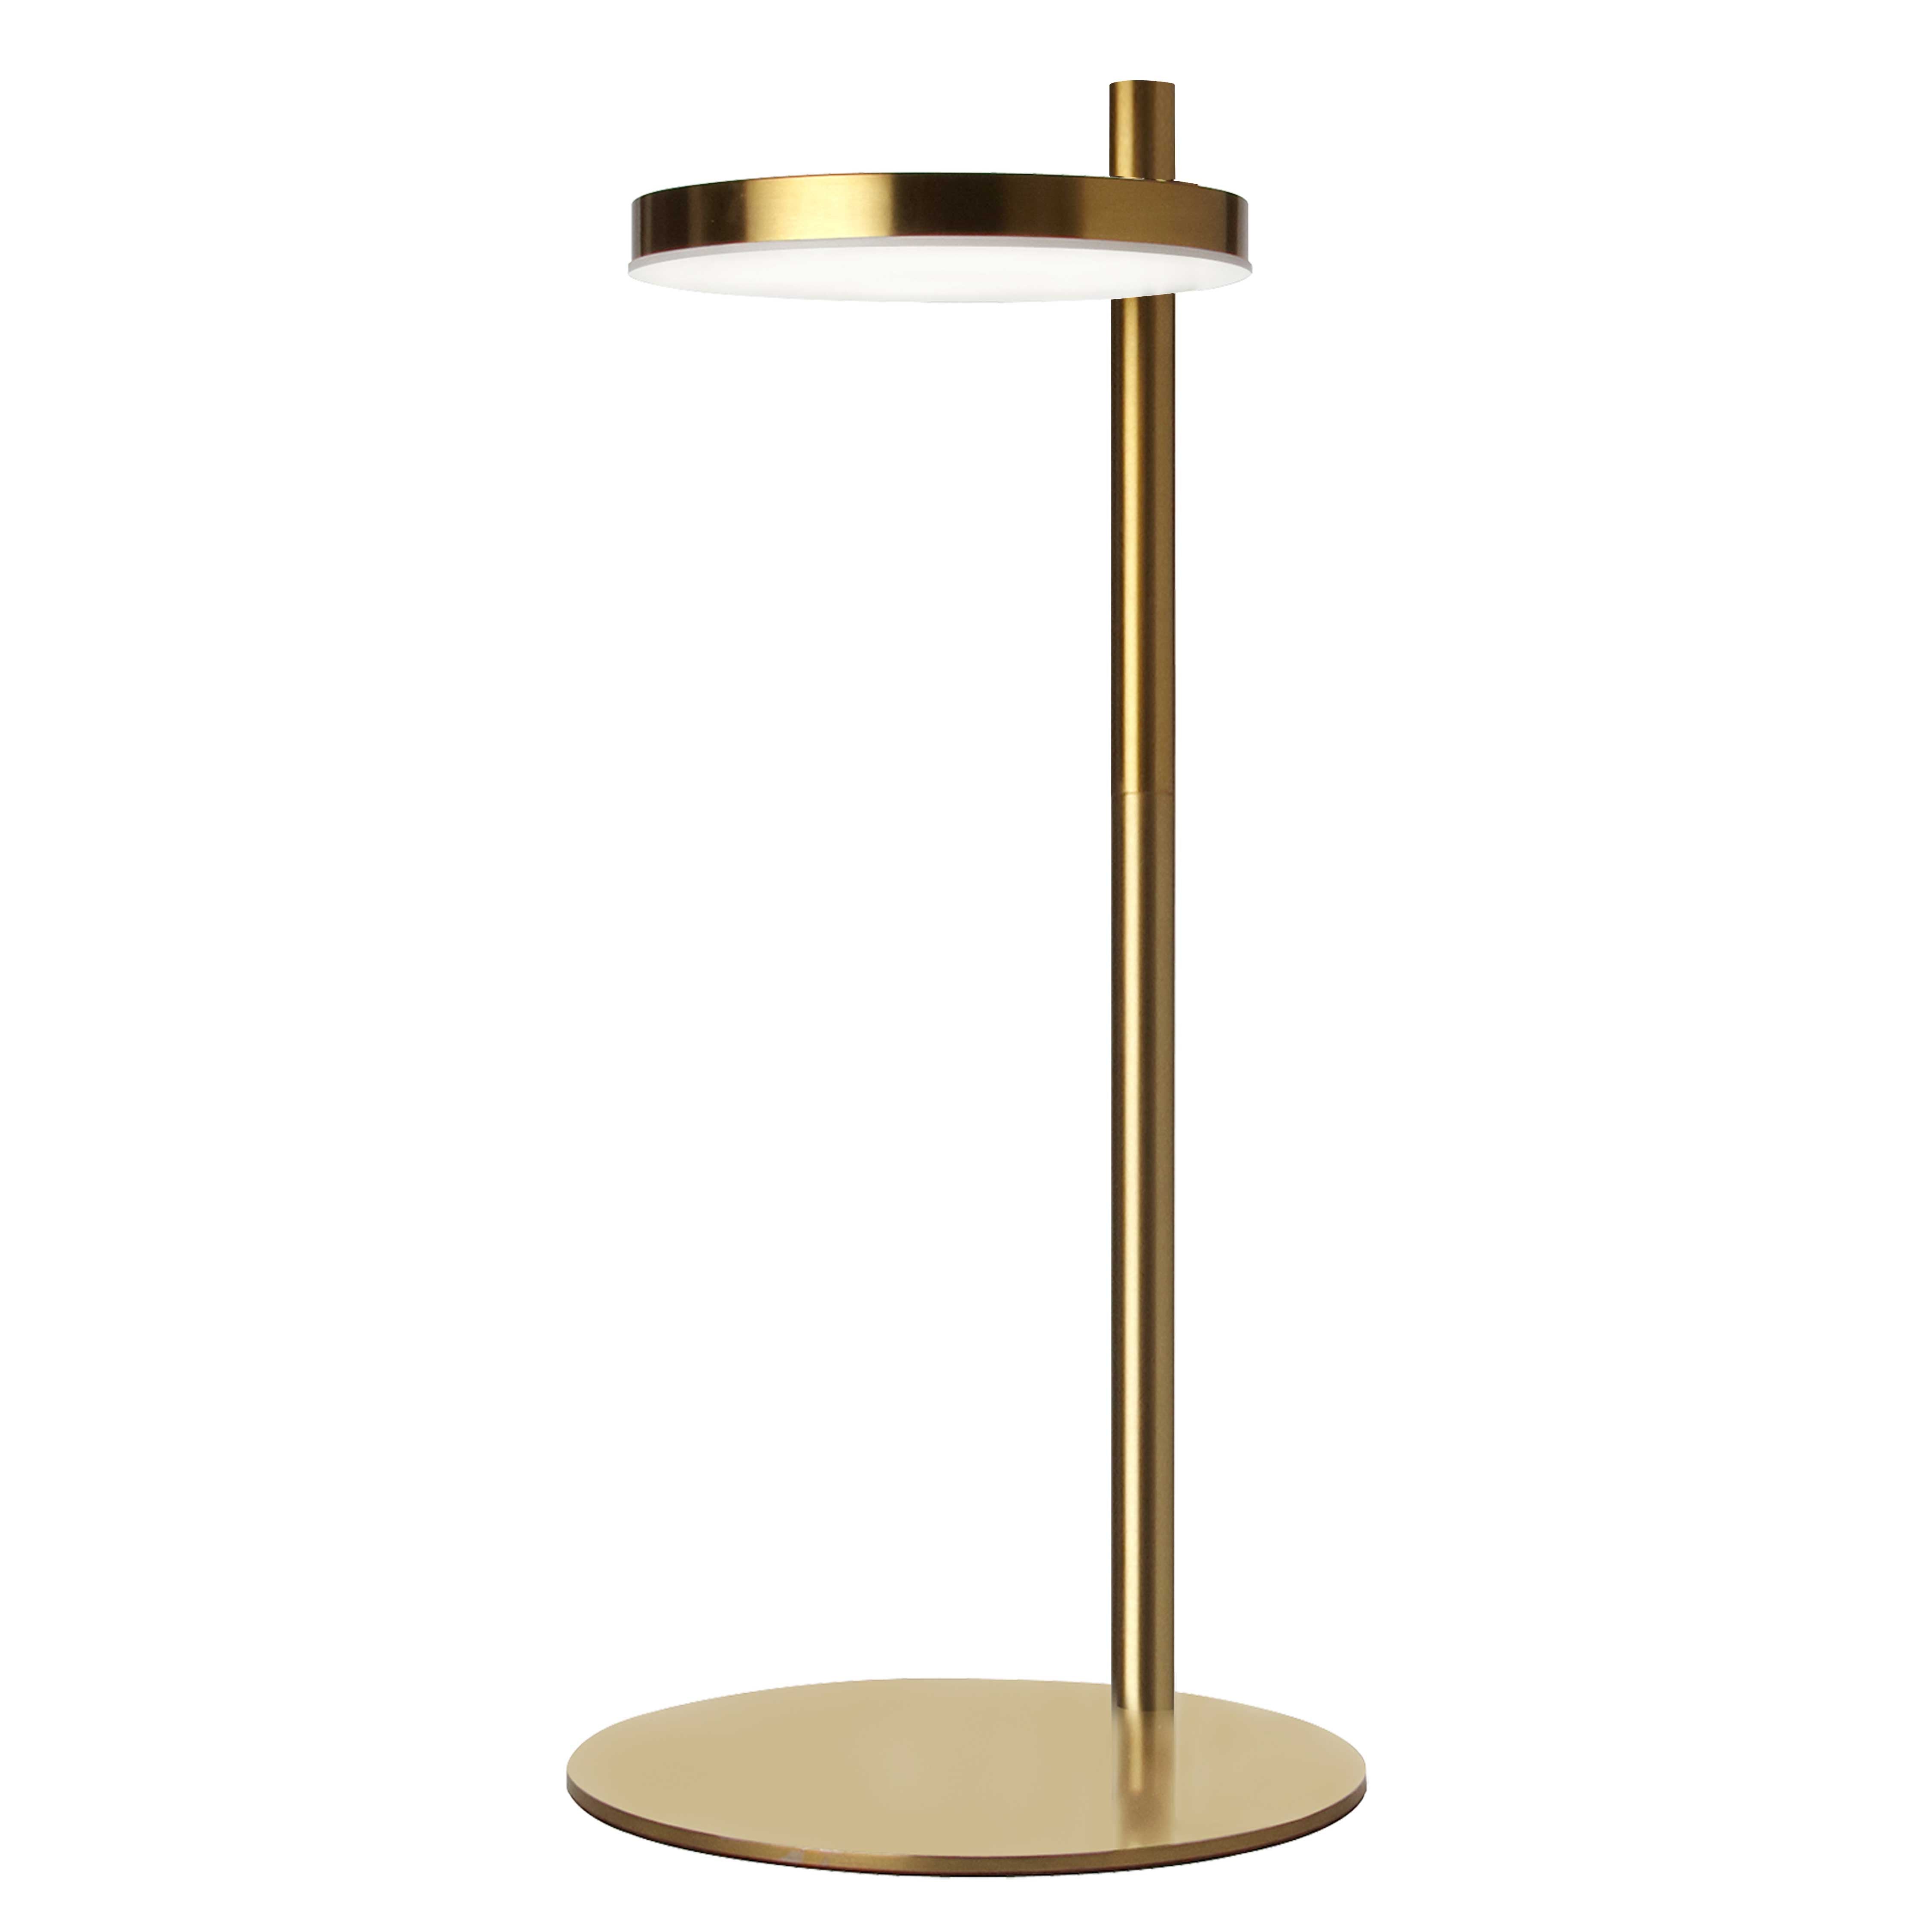 FIA Table lamp Gold INTEGRATED LED - FIA-1512LEDT-AGB | DAINOLITE